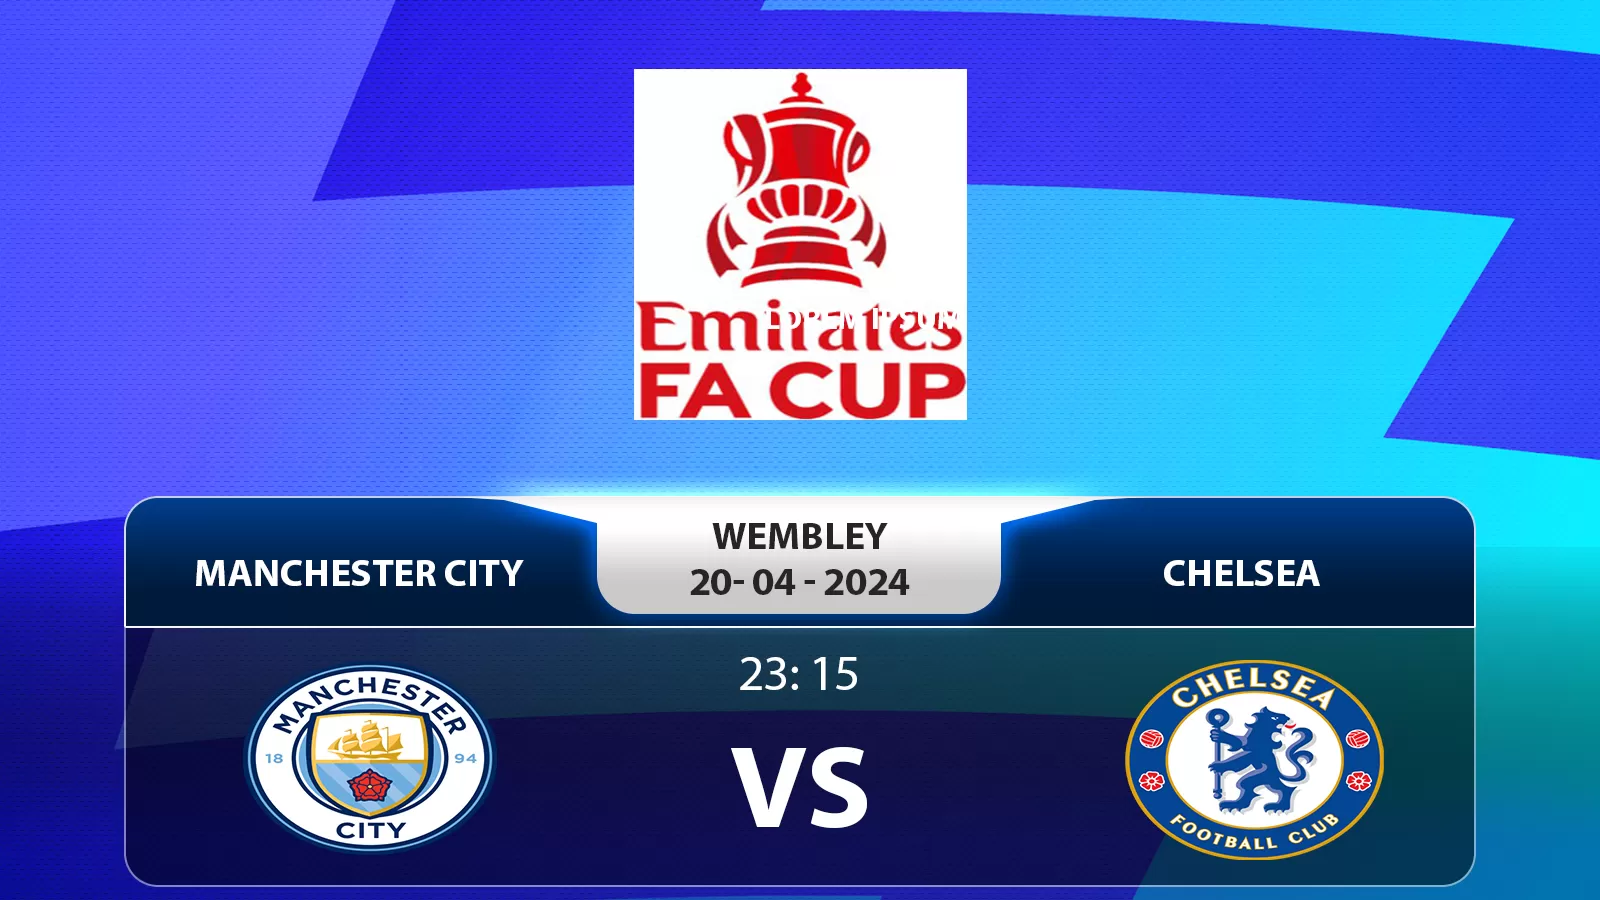 FA Cup: Manchester City vs Chelsea 23h15 ngày 20/04/2024 - Liệu Nhà Vua Cũ Có Giữ Vững Phong Độ?